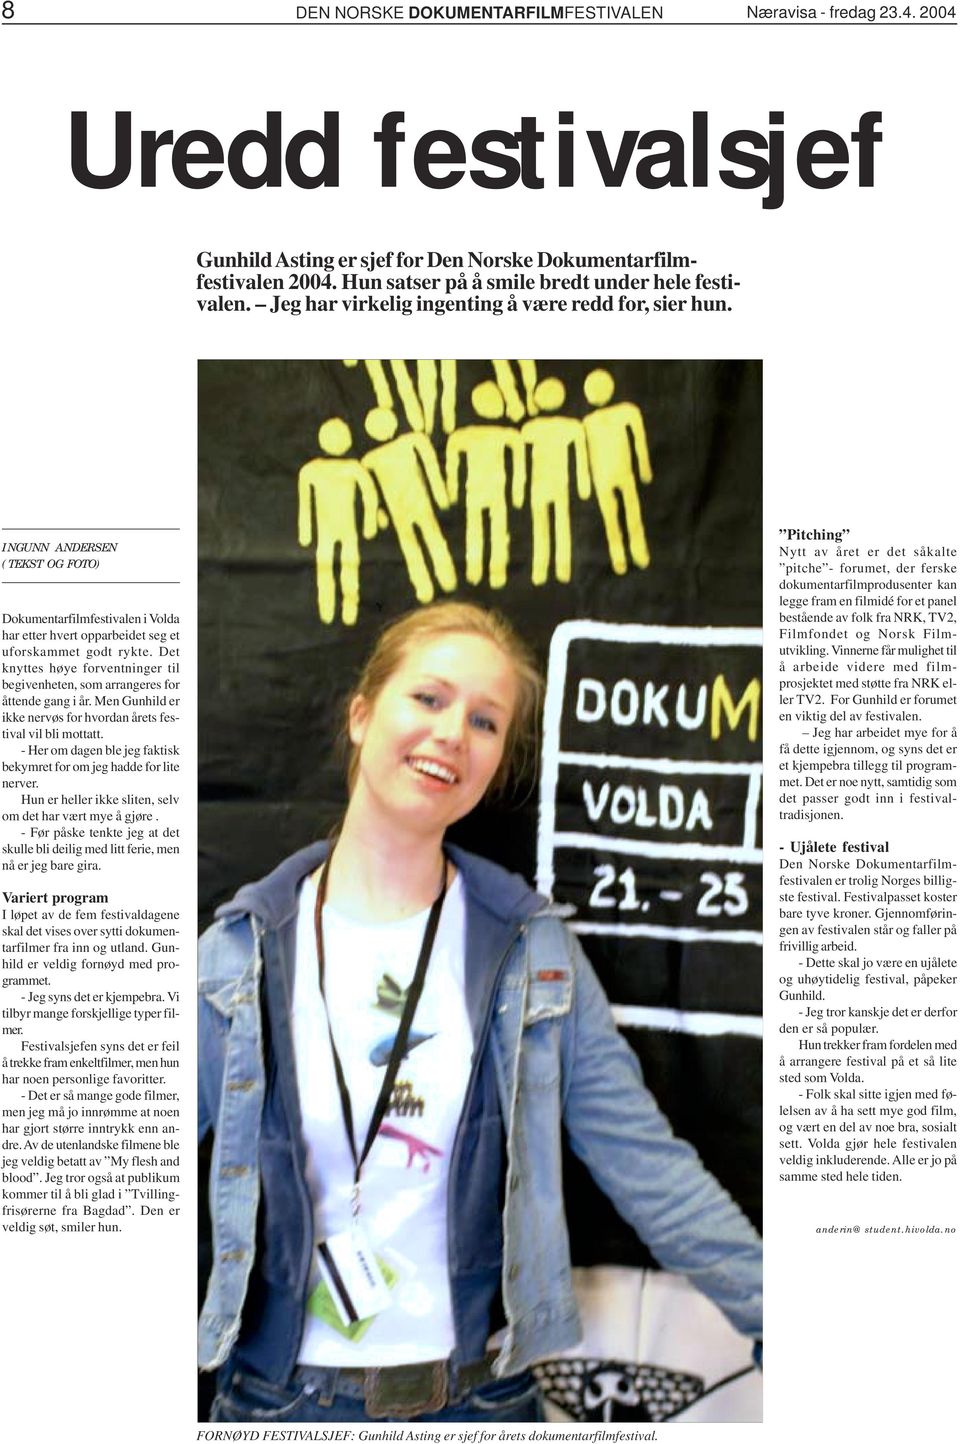 INGUNN ANDERSEN (TEKST OG FOTO) Dokumentarfilmfestivalen i Volda har etter hvert opparbeidet seg et uforskammet godt rykte.